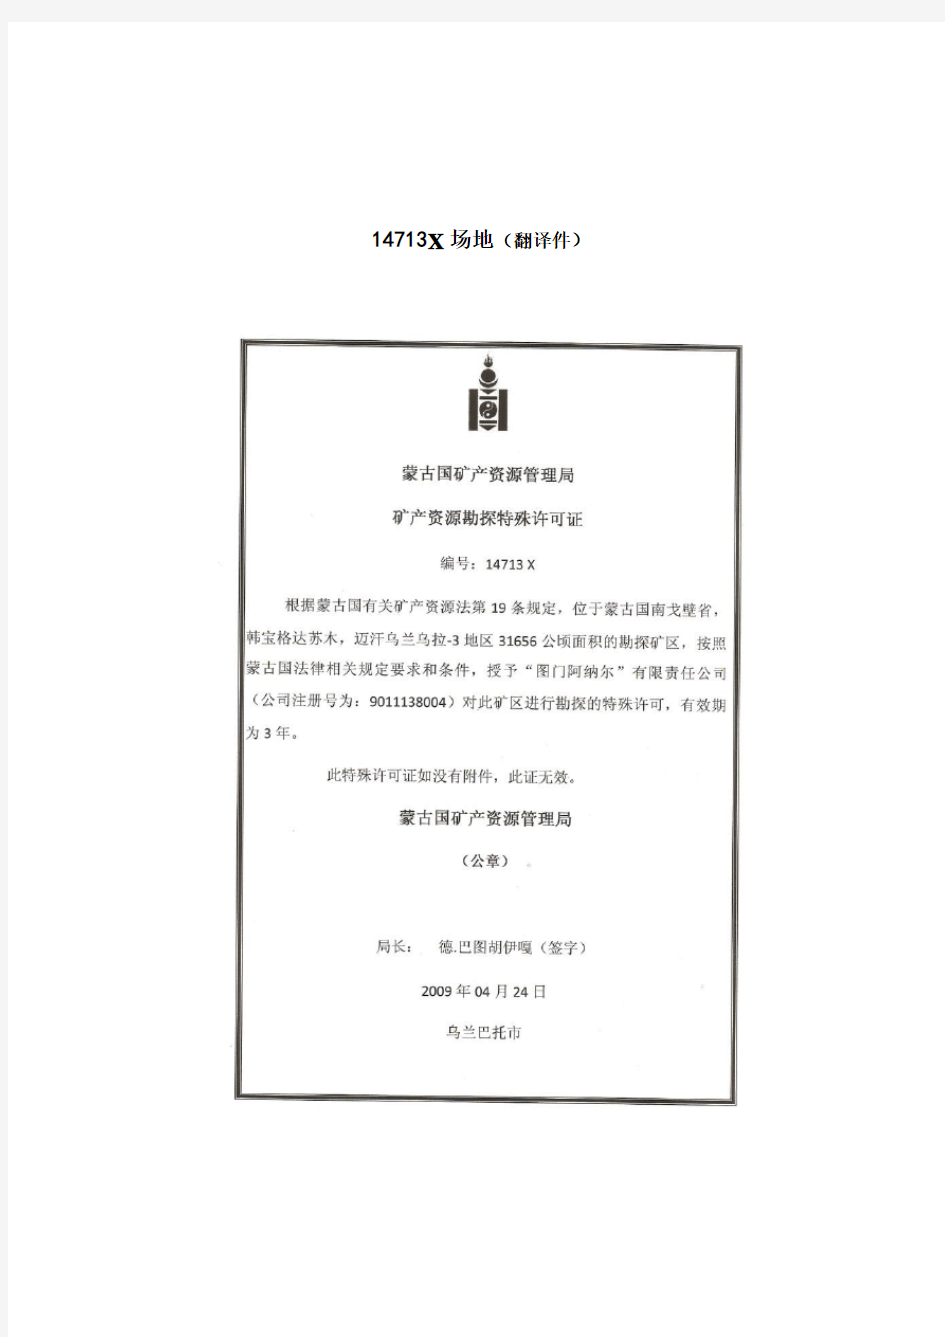 蒙古国矿区资料报告(14713)